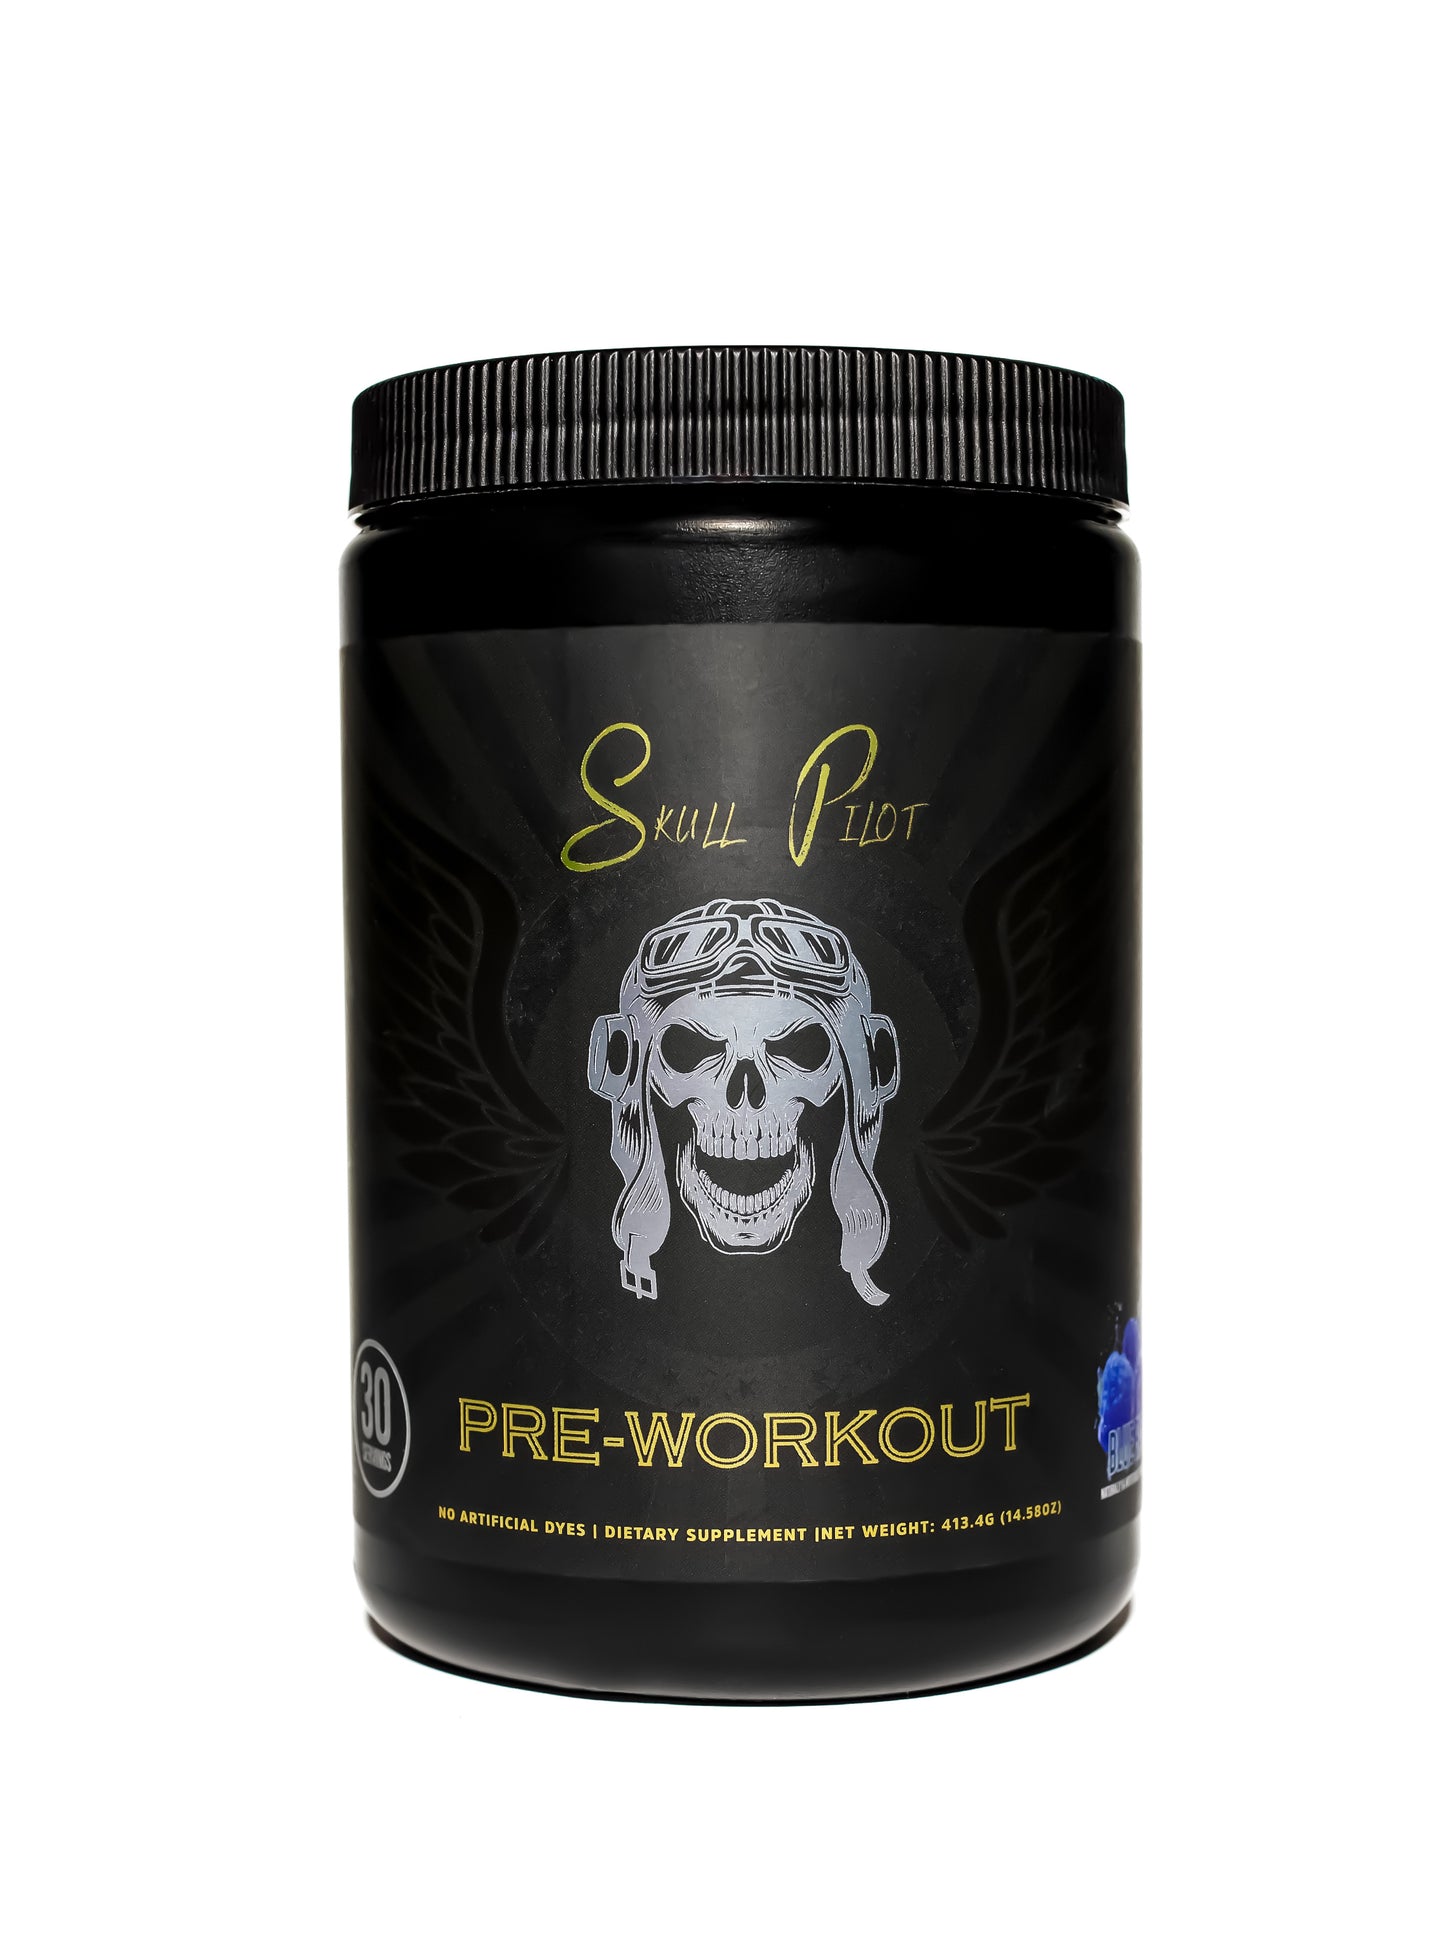 pre-workout powder, gym supplement, pre-workout